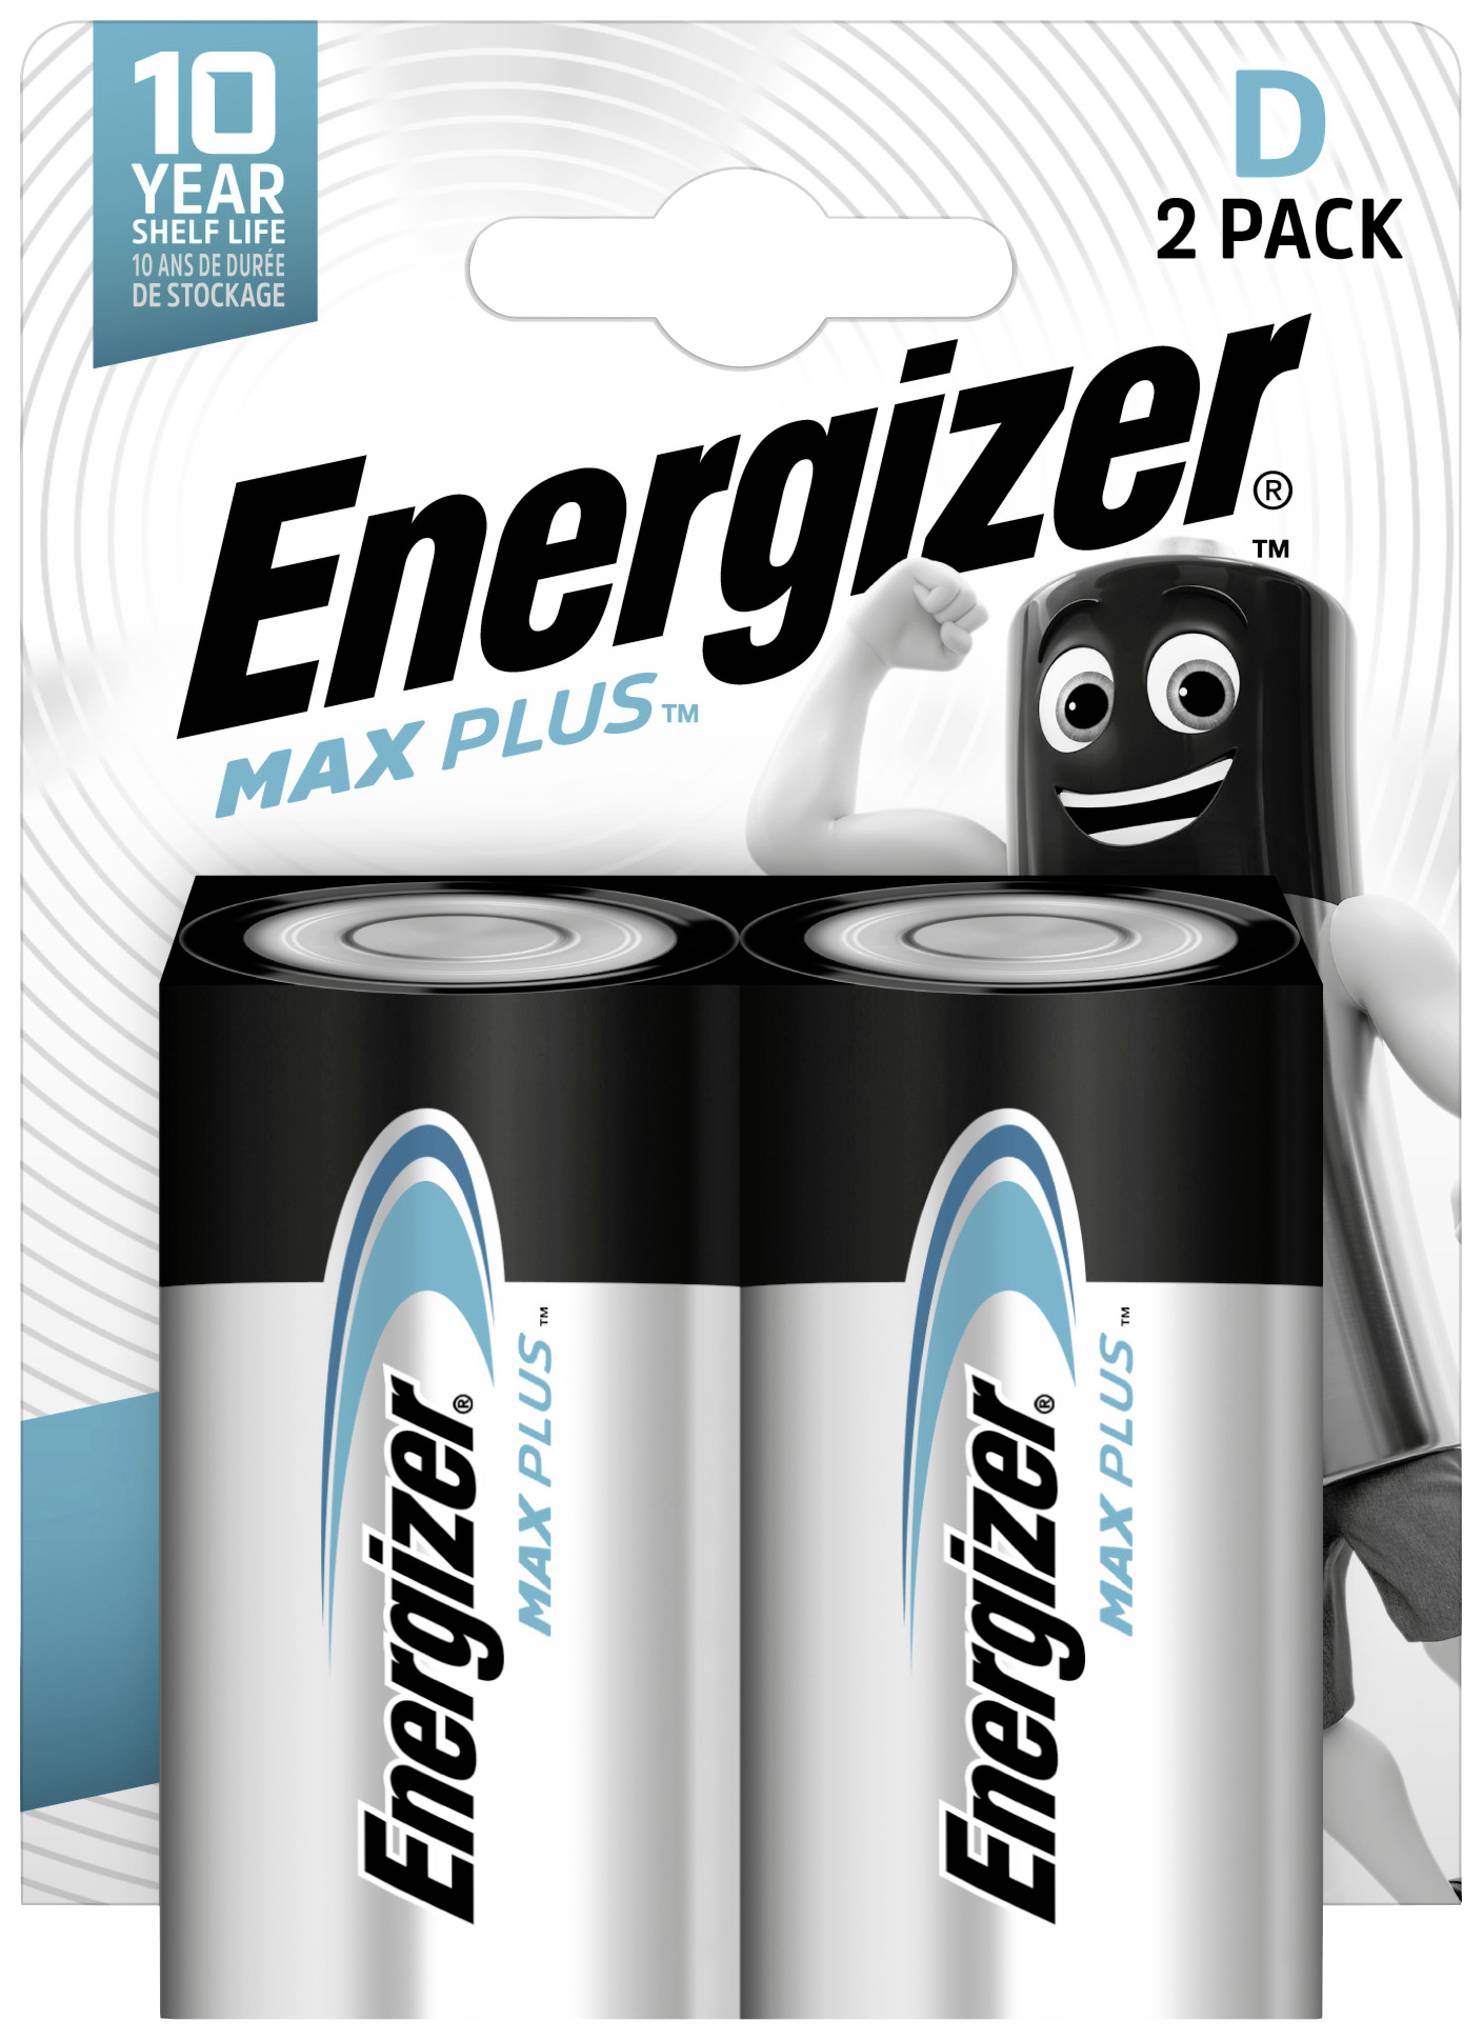 ENERGIZER Mono (D)-Batterie Alkali-Mangan Max Plus 1.5 V 2 Stück (E301323900)